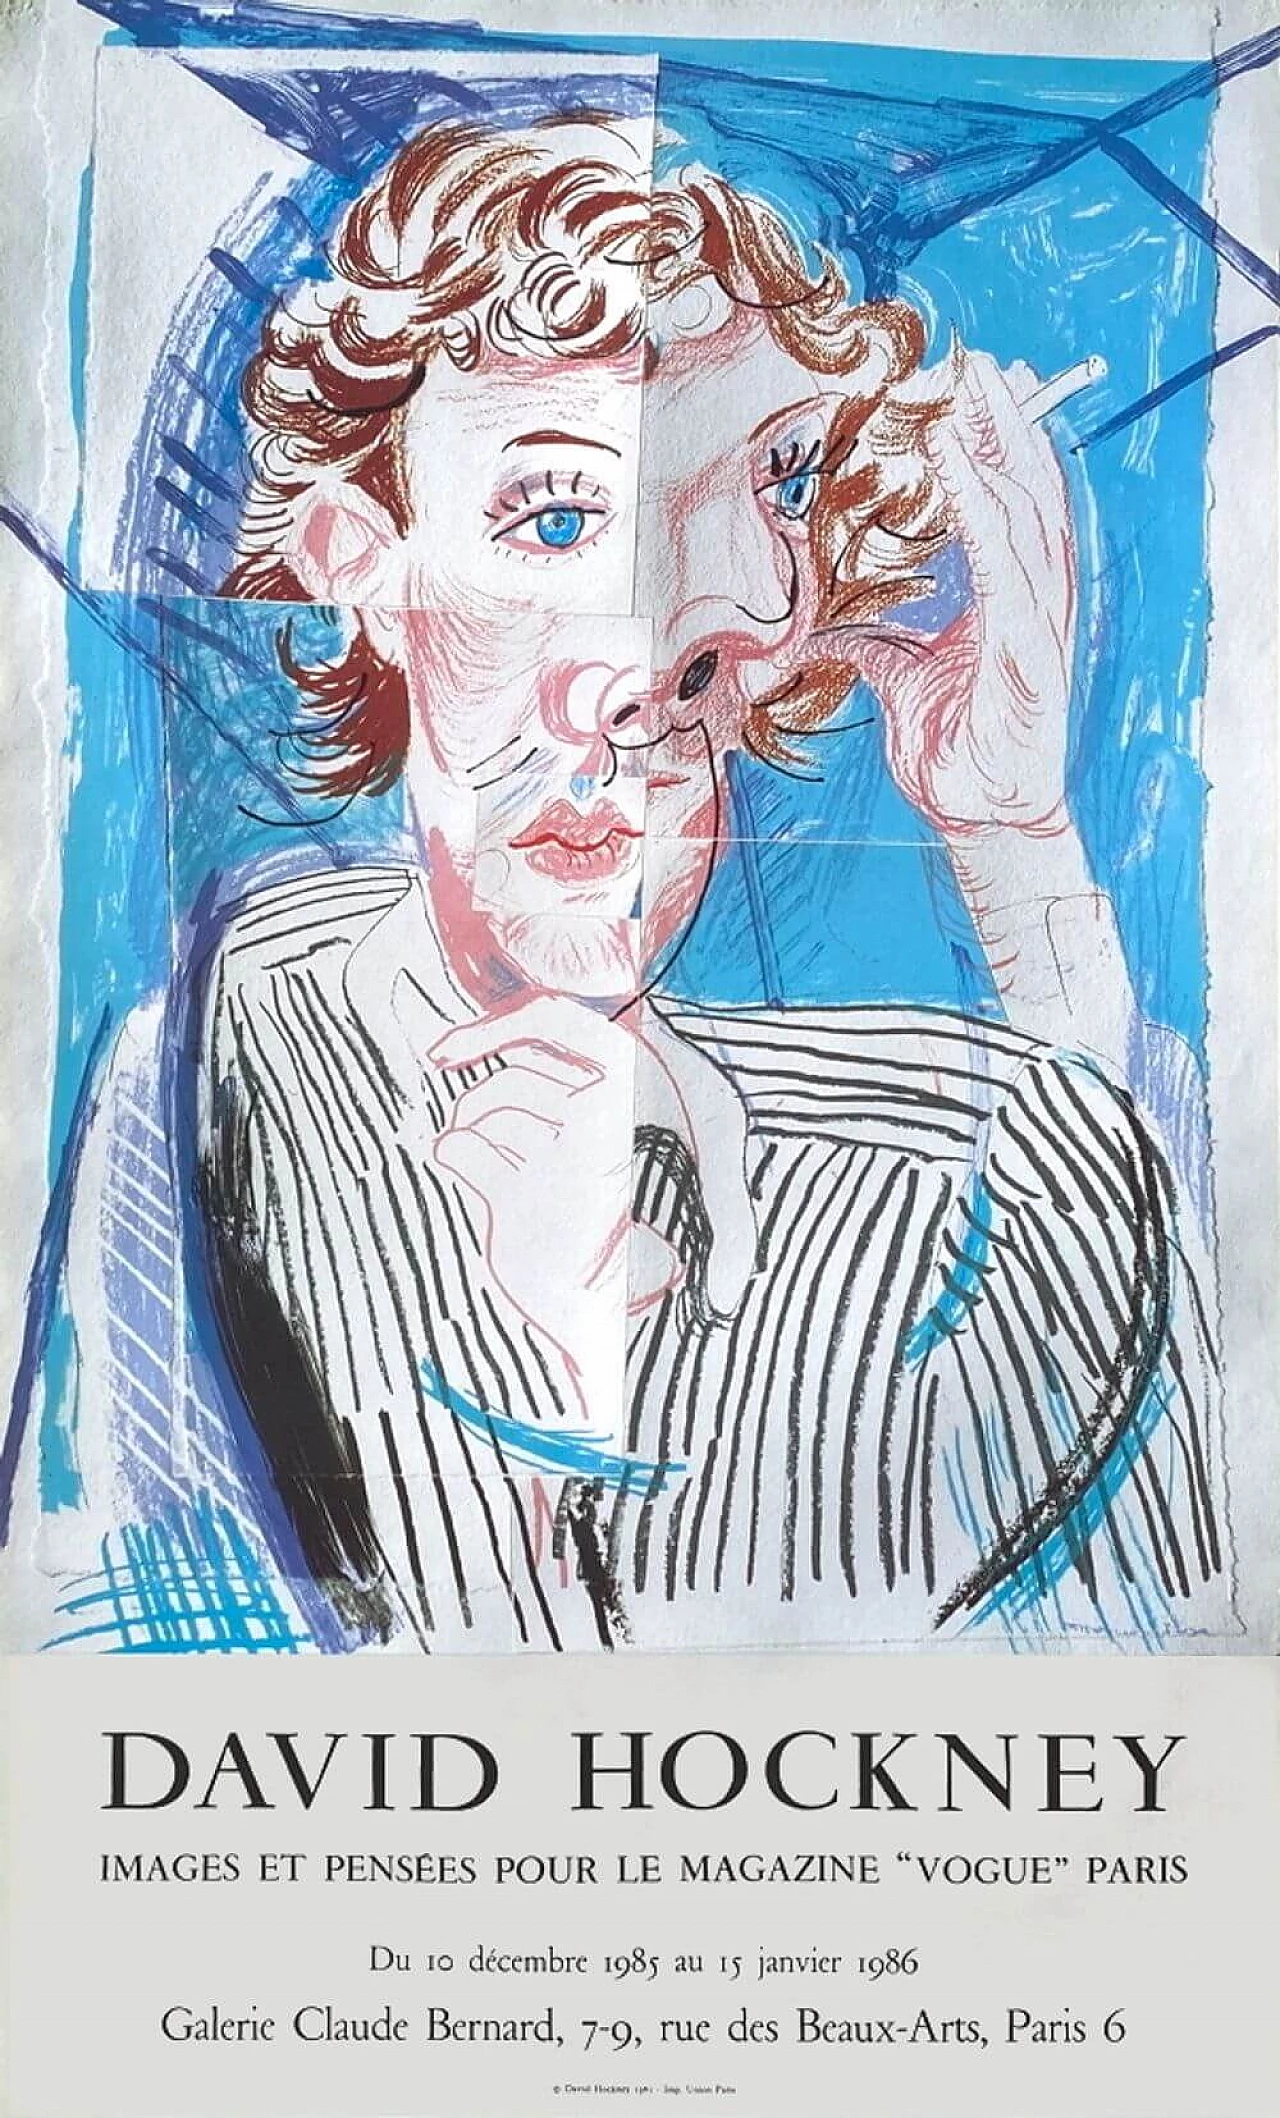 David Hockney Exhibition Poster, 1986 1219443